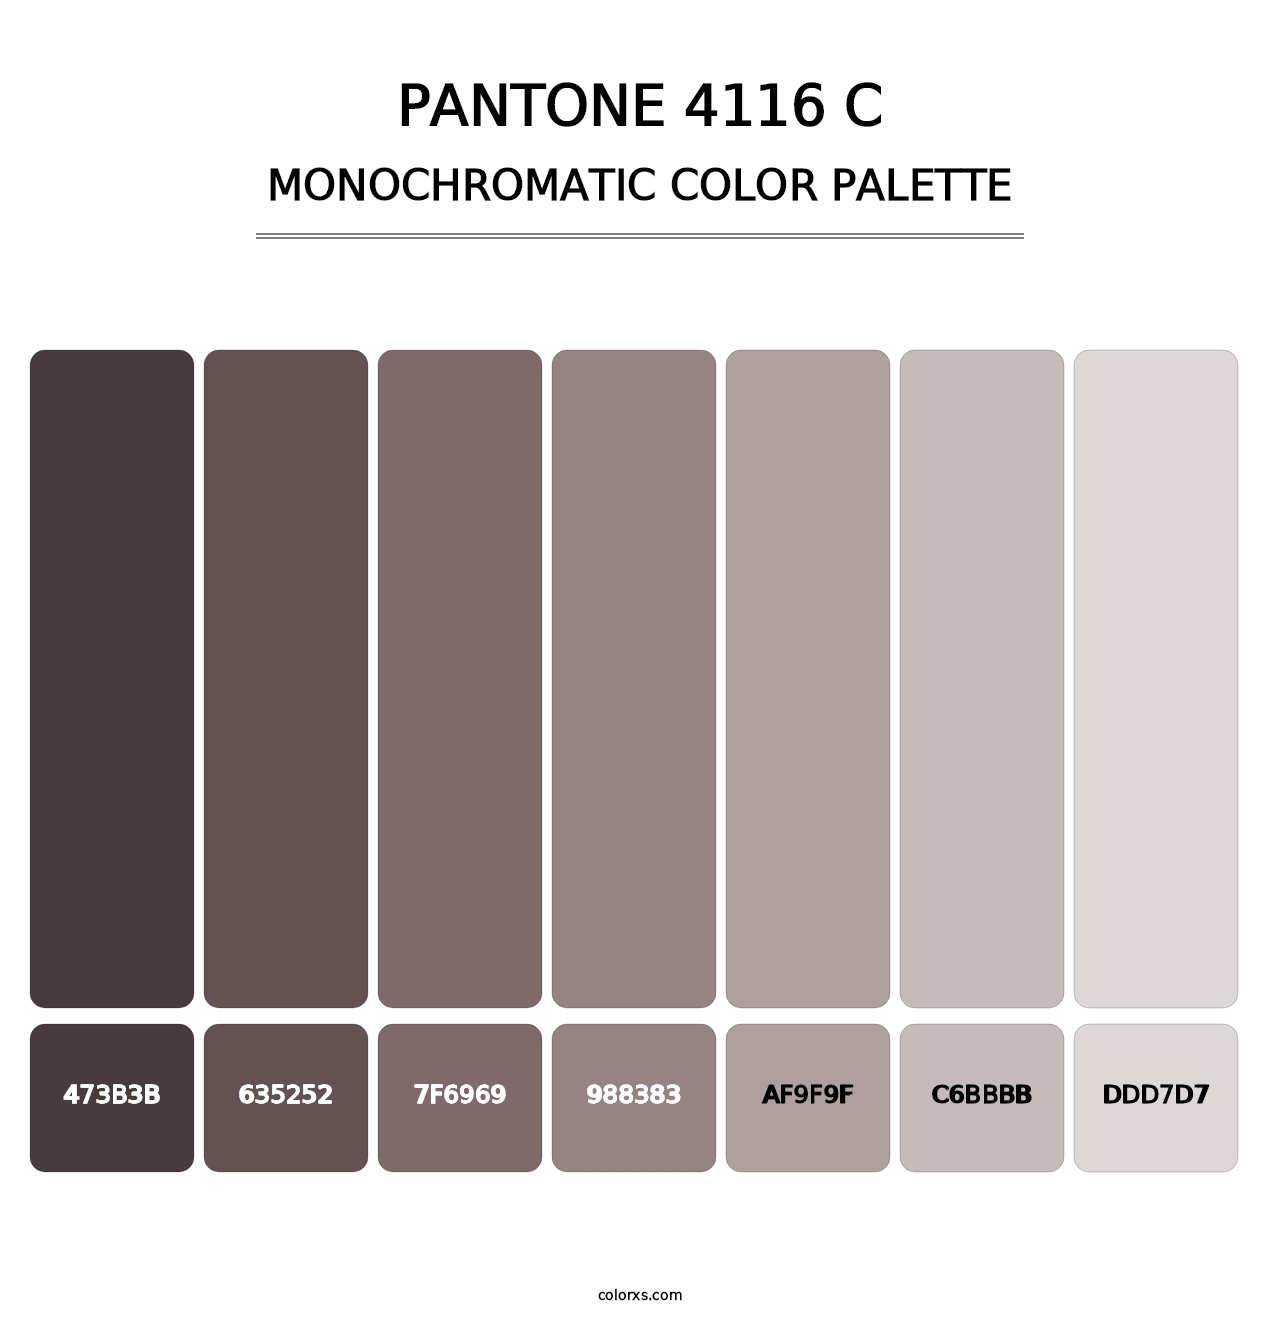 PANTONE 4116 C - Monochromatic Color Palette